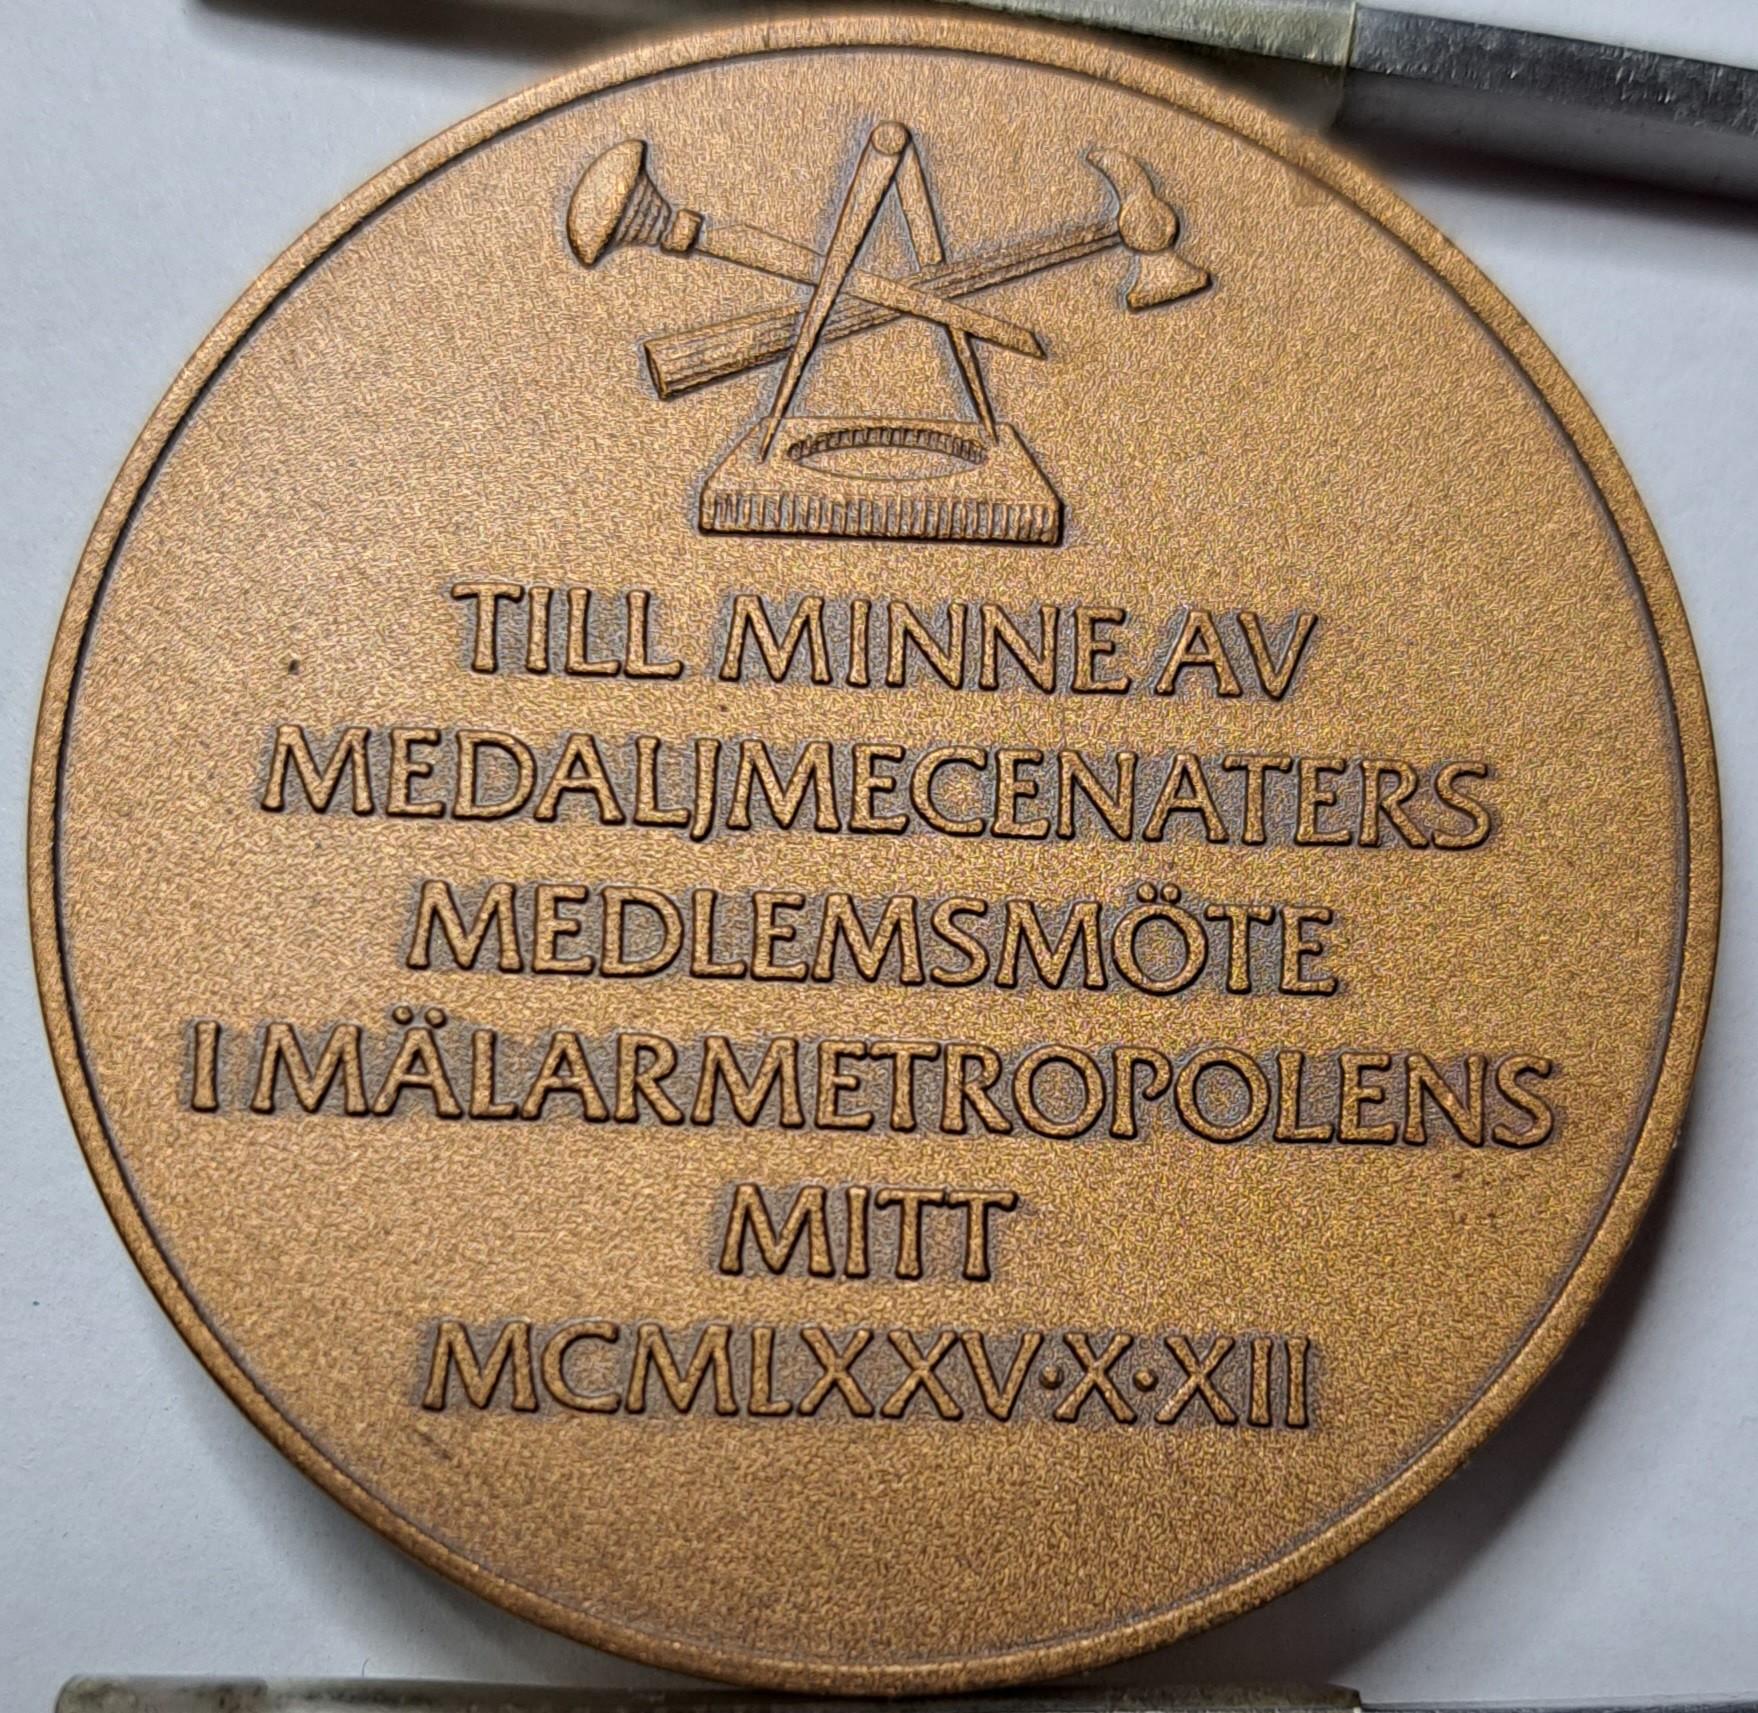 Sporrong Medal 1975.10.12 (5513)